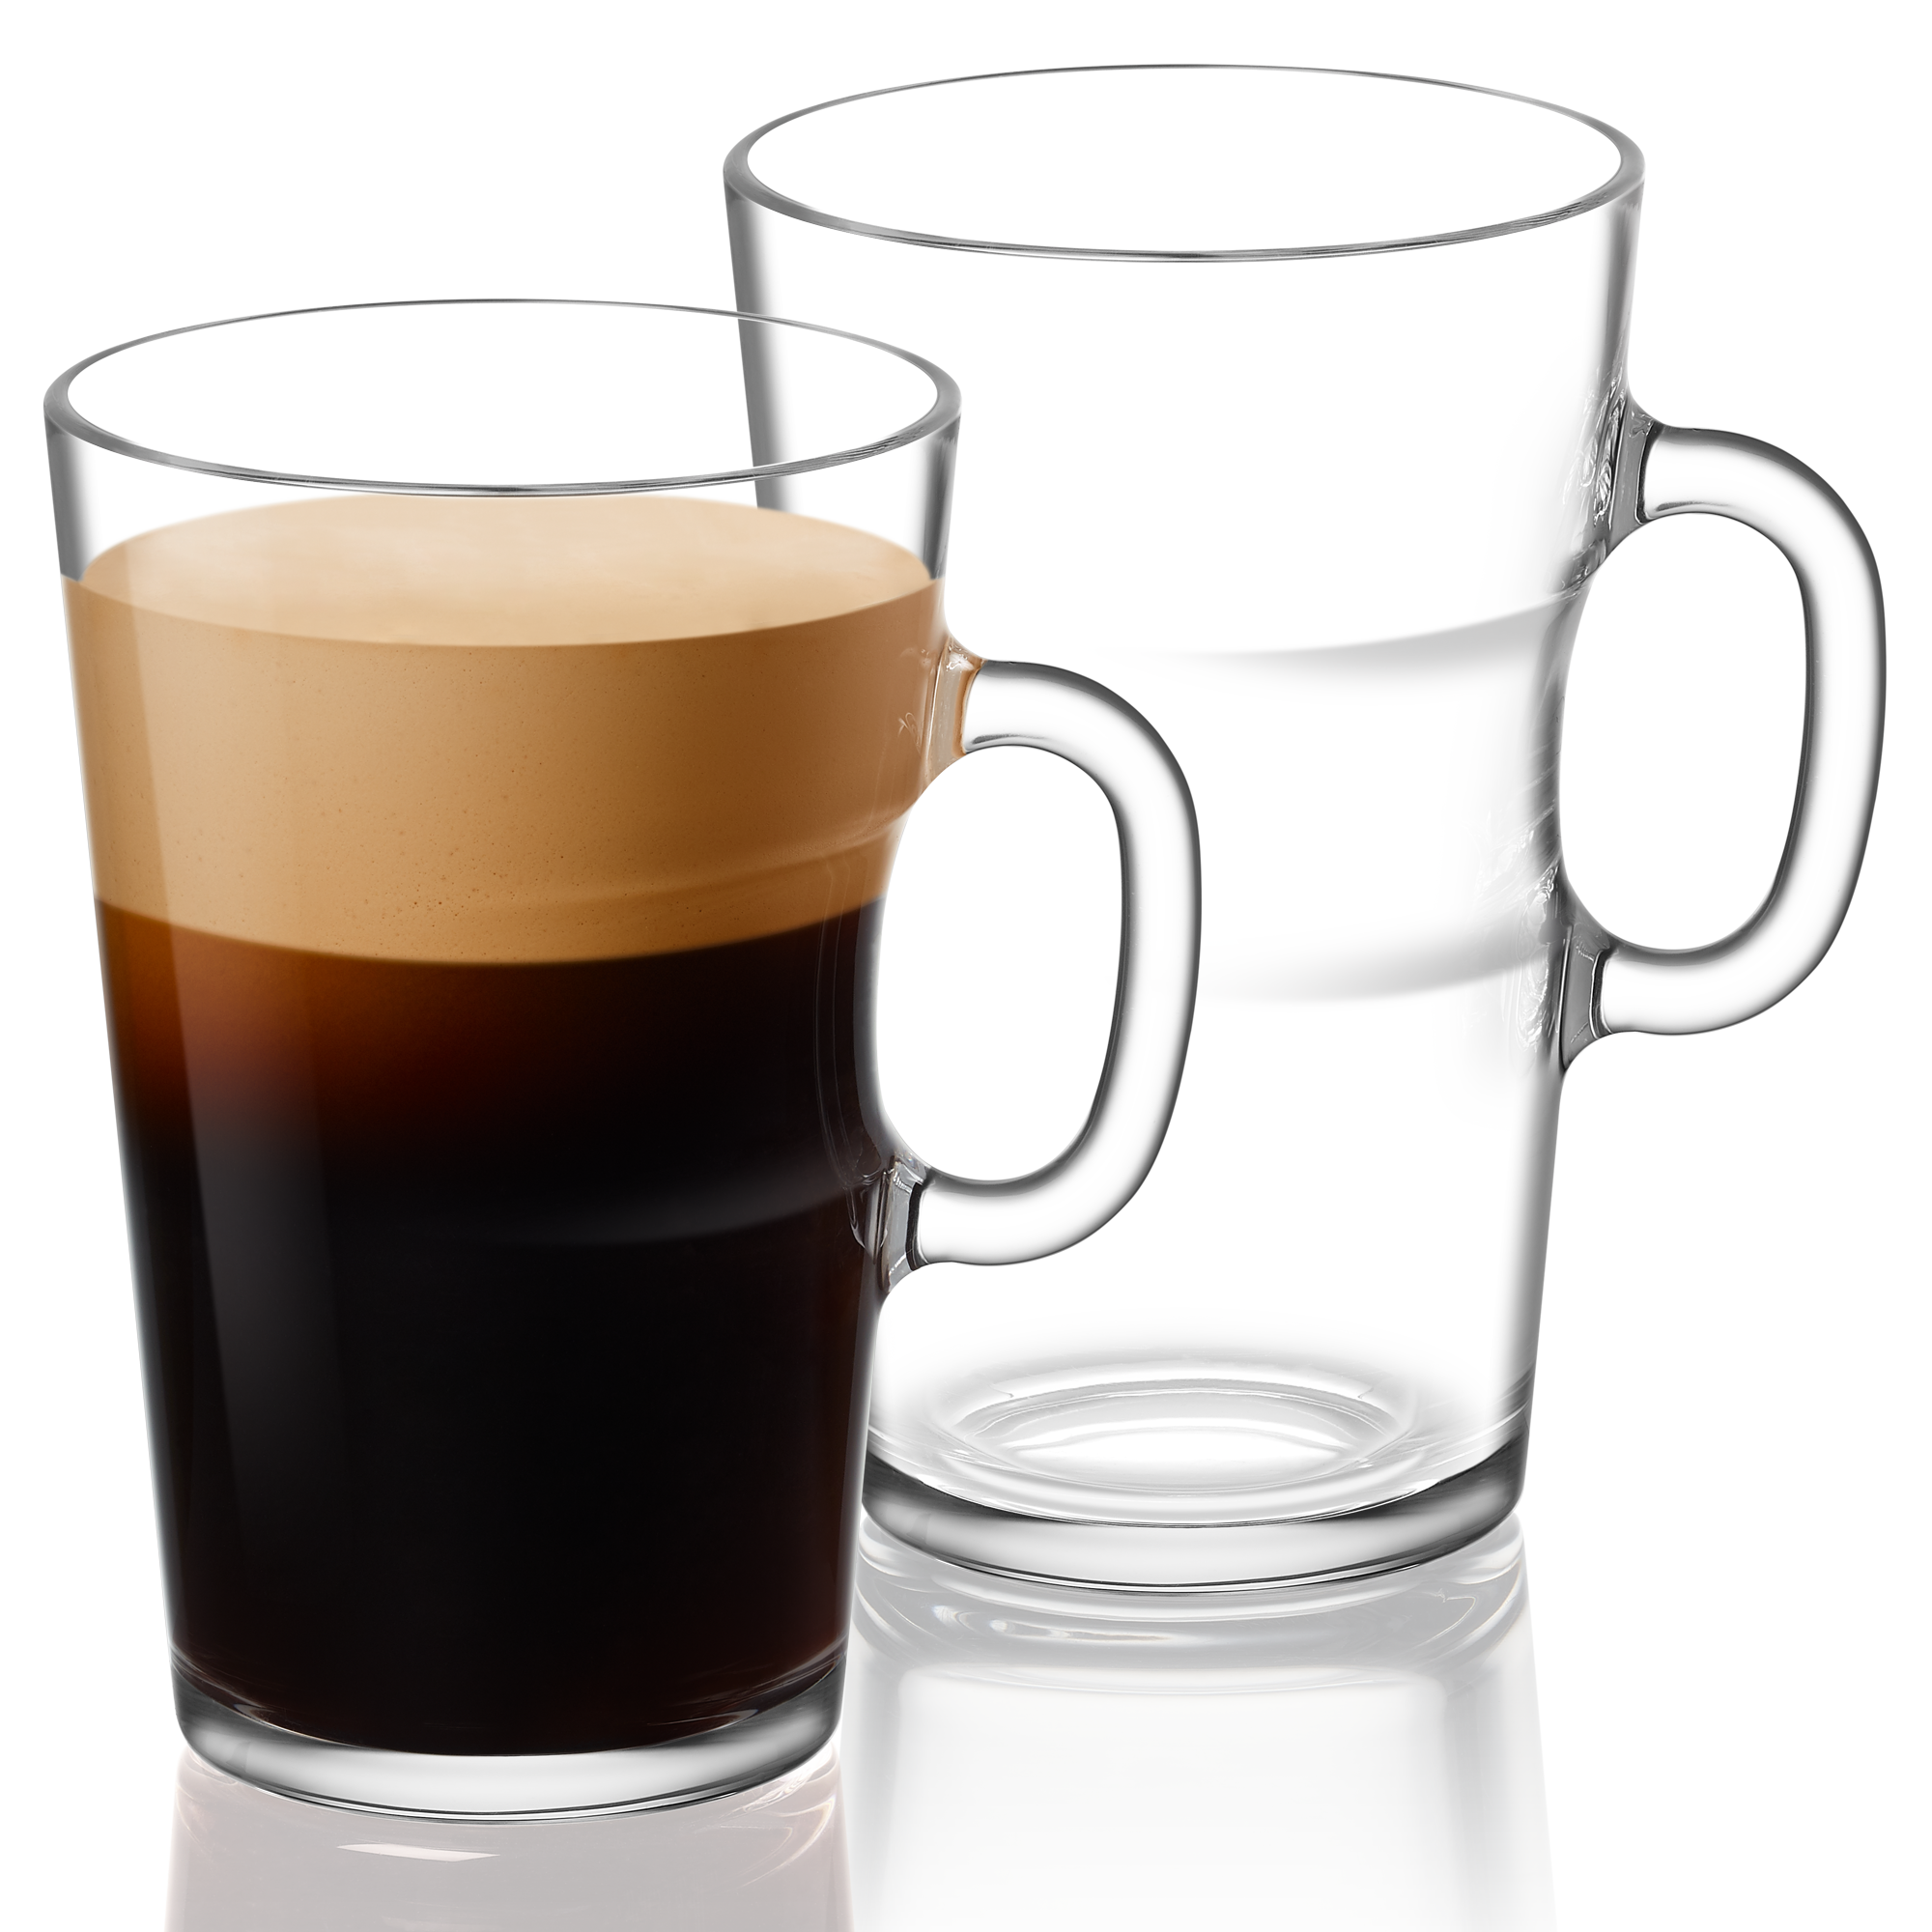 https://www.nespresso.com/ecom/medias/sys_master/public/10398991777822/A-0351-VIEW-Coffee-Mug-2000x2000.png